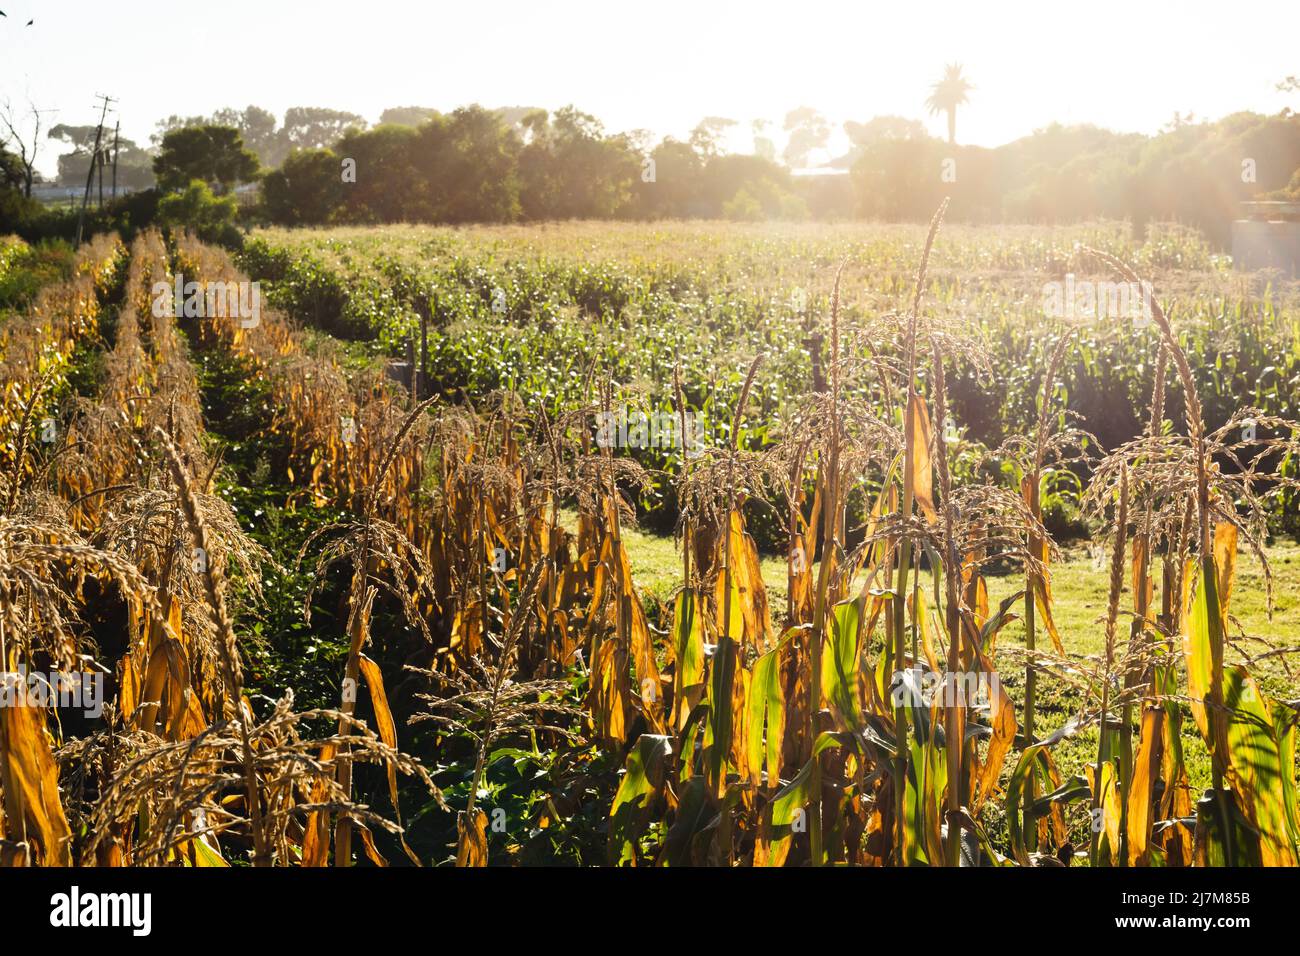 Vue panoramique sur les cultures vertes qui poussent dans une ferme biologique contre un ciel clair pendant la journée ensoleillée, espace copie Banque D'Images